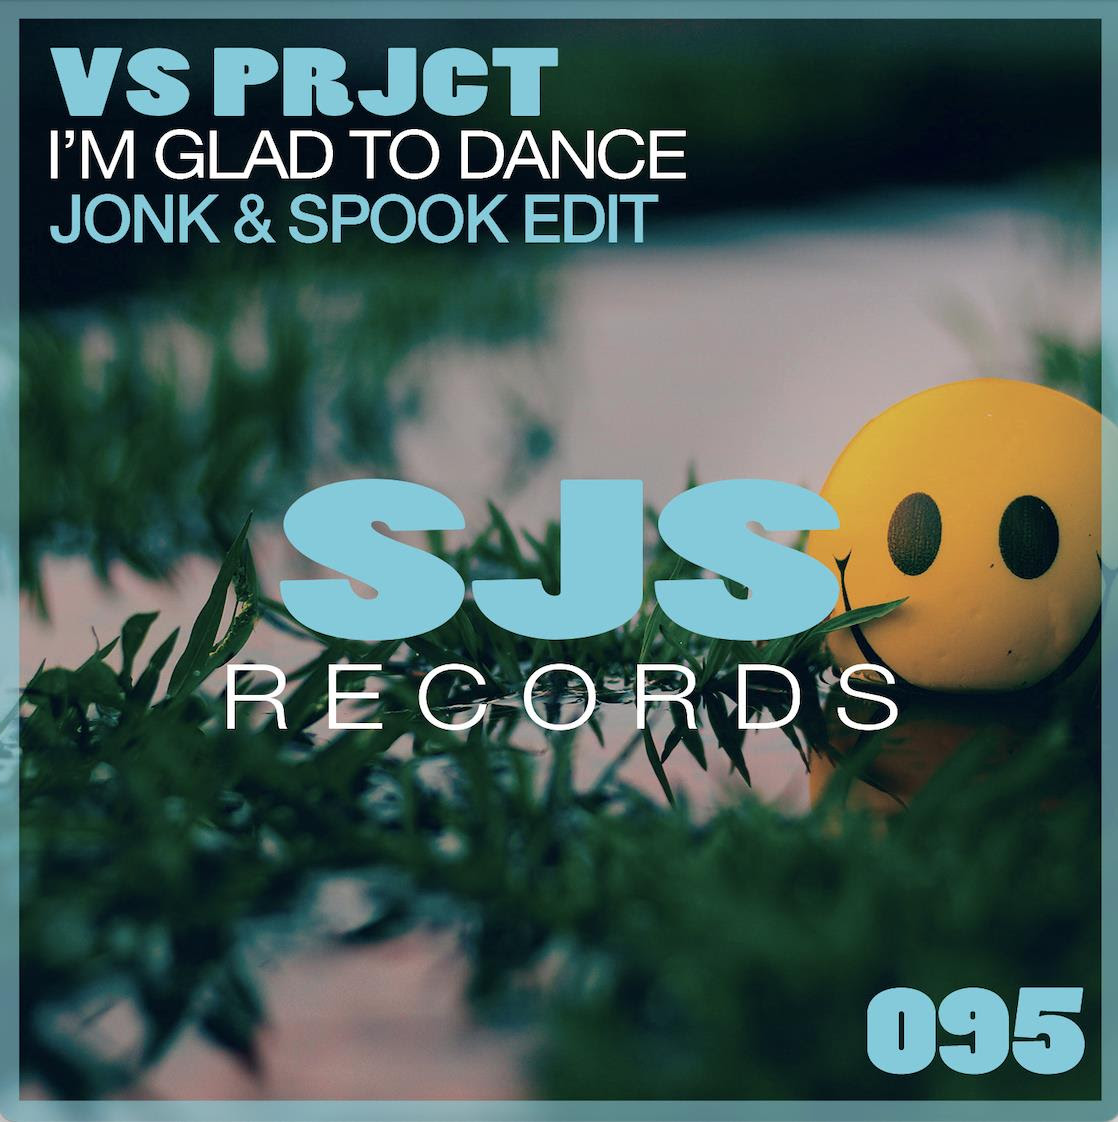 VS PRJCT "I'm glad to dance Jonk & Spook Edit) è il nuovo singolo, dal 8 Aprile